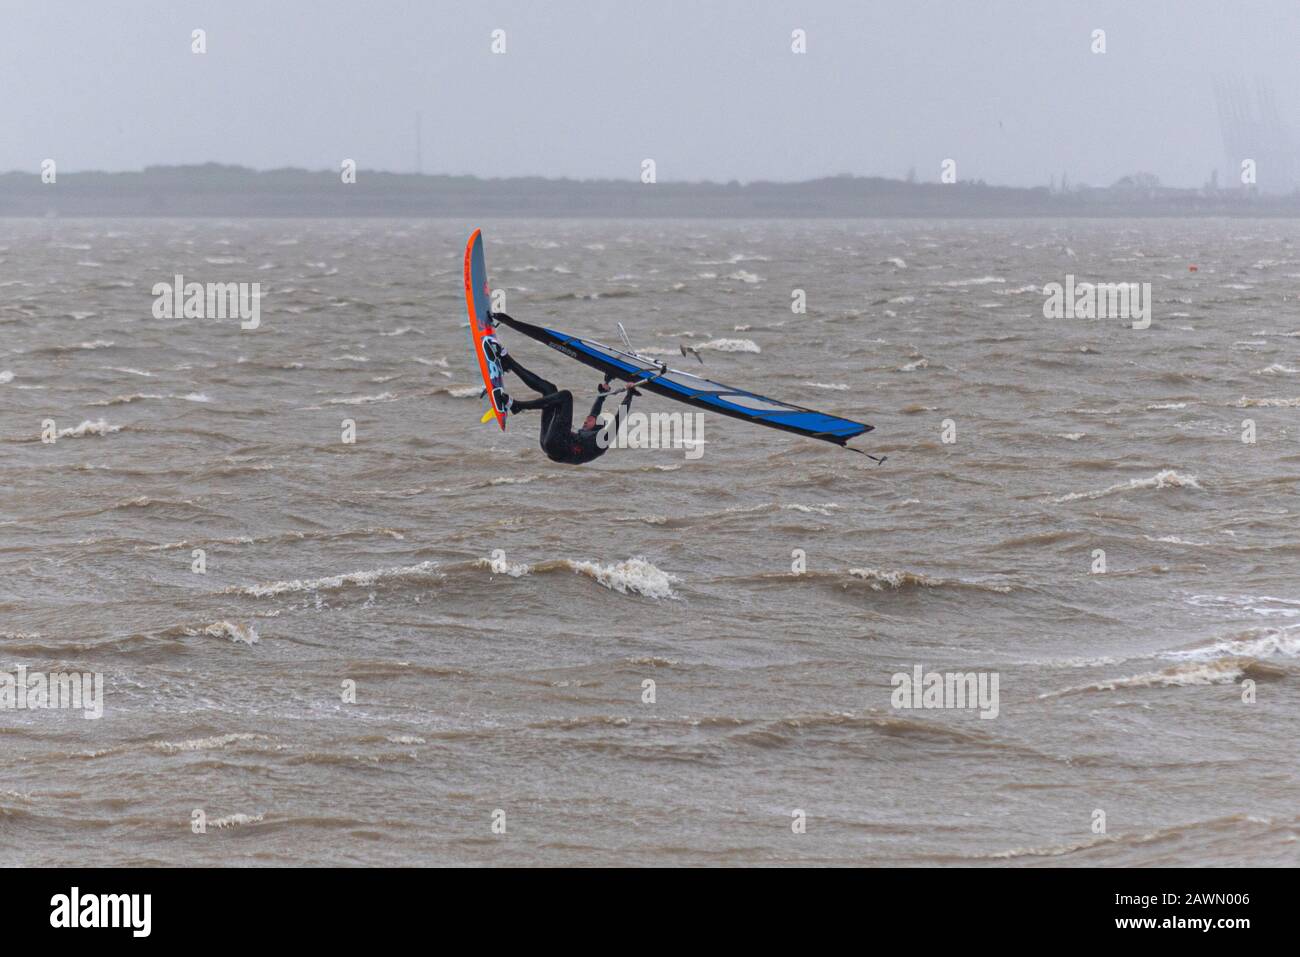 Ein Windsurfer, der auf rauer See in die Luft in der Themsemündung sprang, während der Sturm Ciara das Wetter in Southend on Sea, Essex, Großbritannien beeinträchtigt. Fliegen Stockfoto